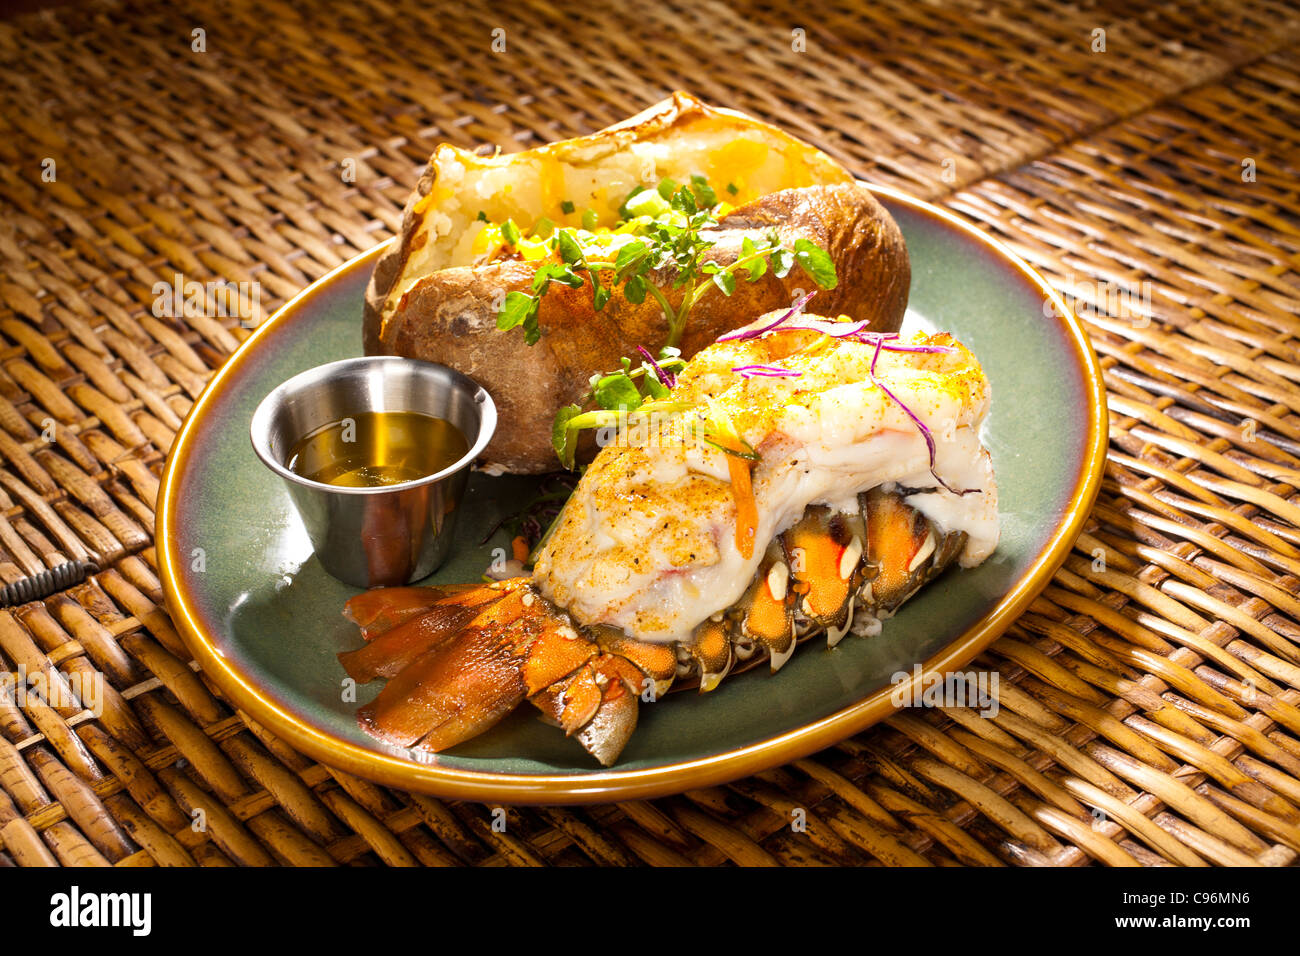 Queue de homard au beurre, pomme de terre au four sur le côté Photo Stock -  Alamy